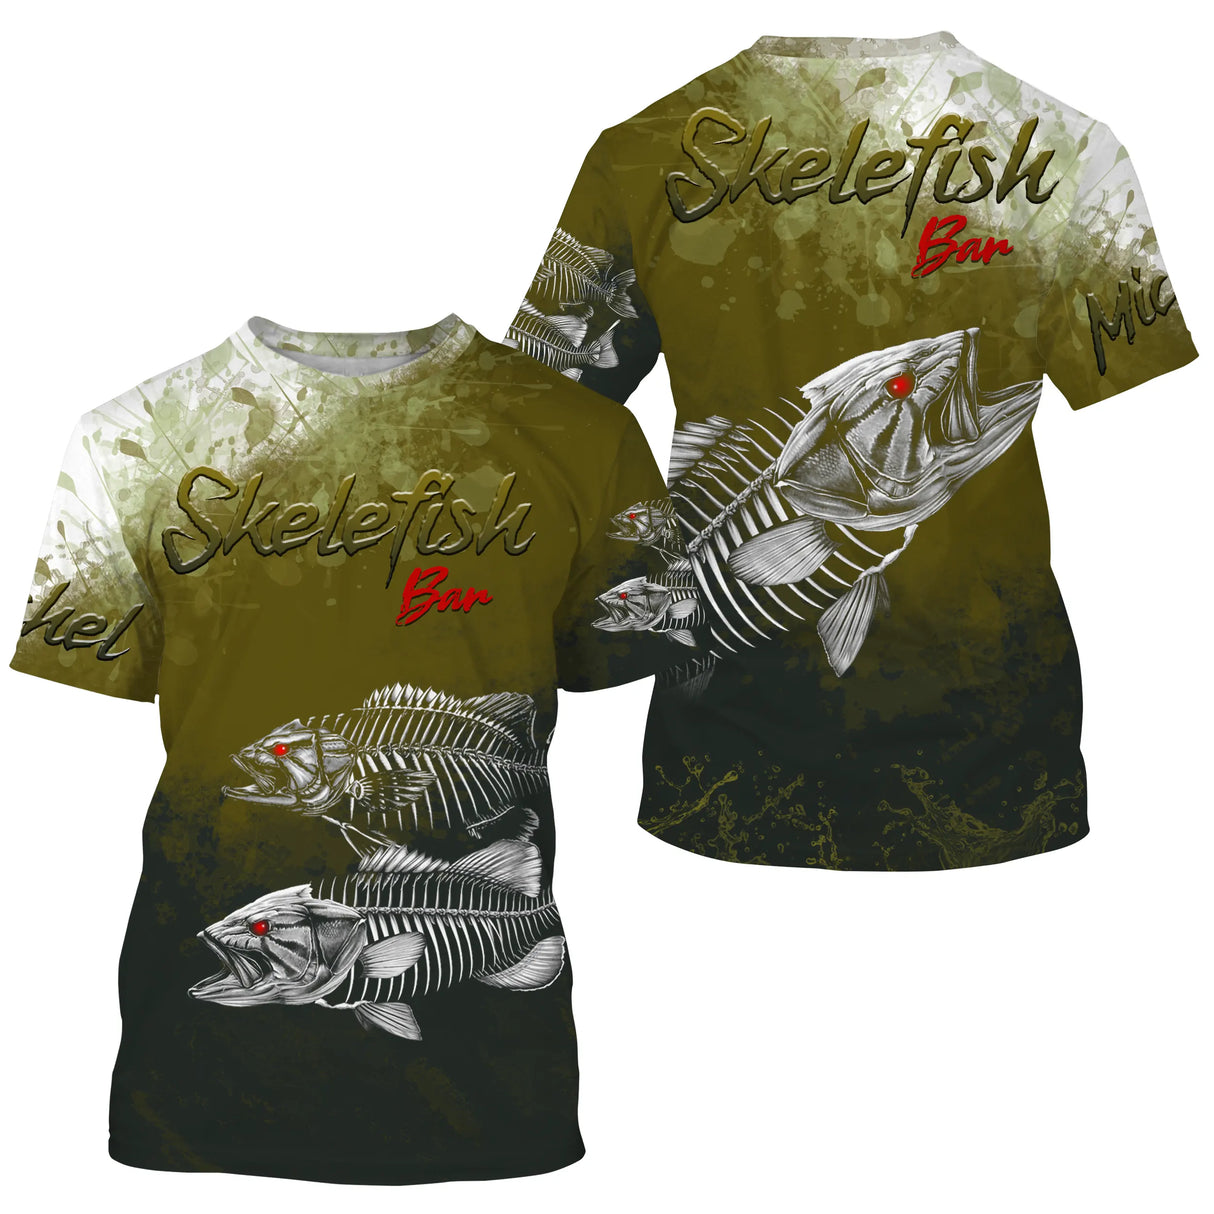 Personalisiertes Anti-UV-Angel-T-Shirt, originelles Fischergeschenk, Skelefish Bar – CT30072226